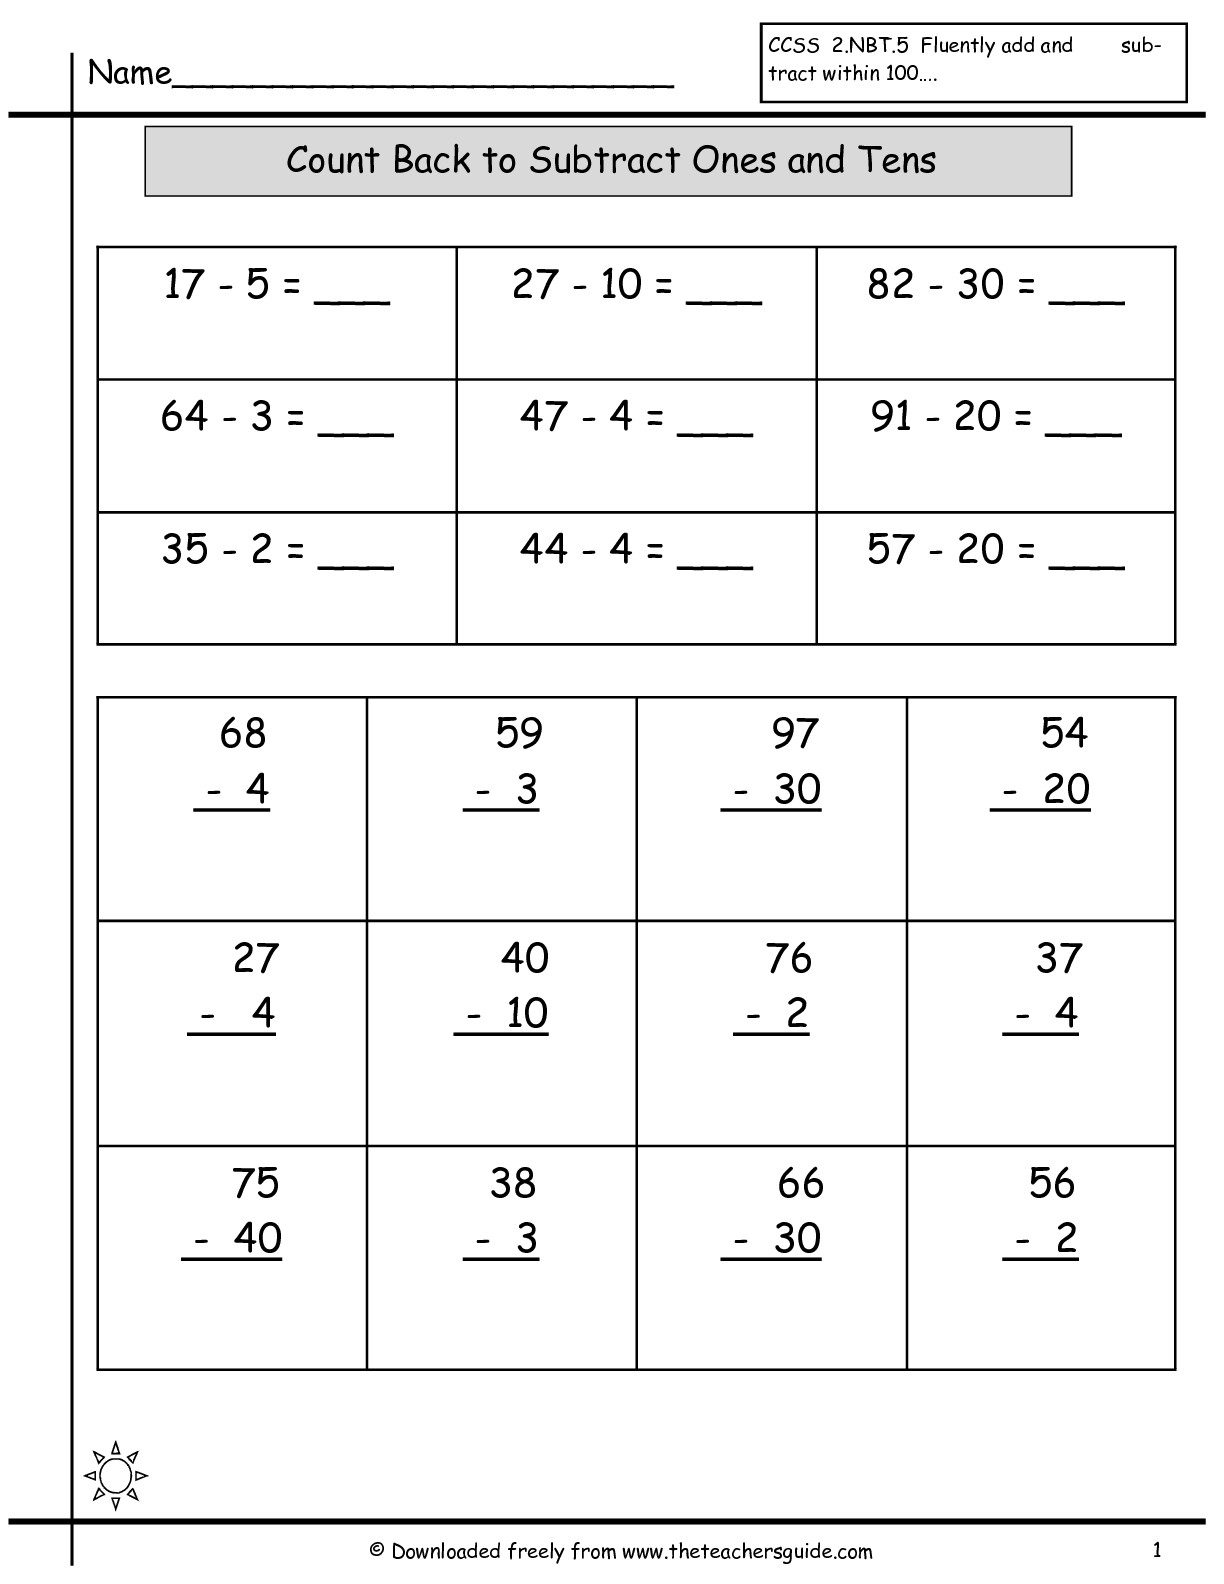 making-10-addition-worksheet-free-kindergarten-math-worksheet-for